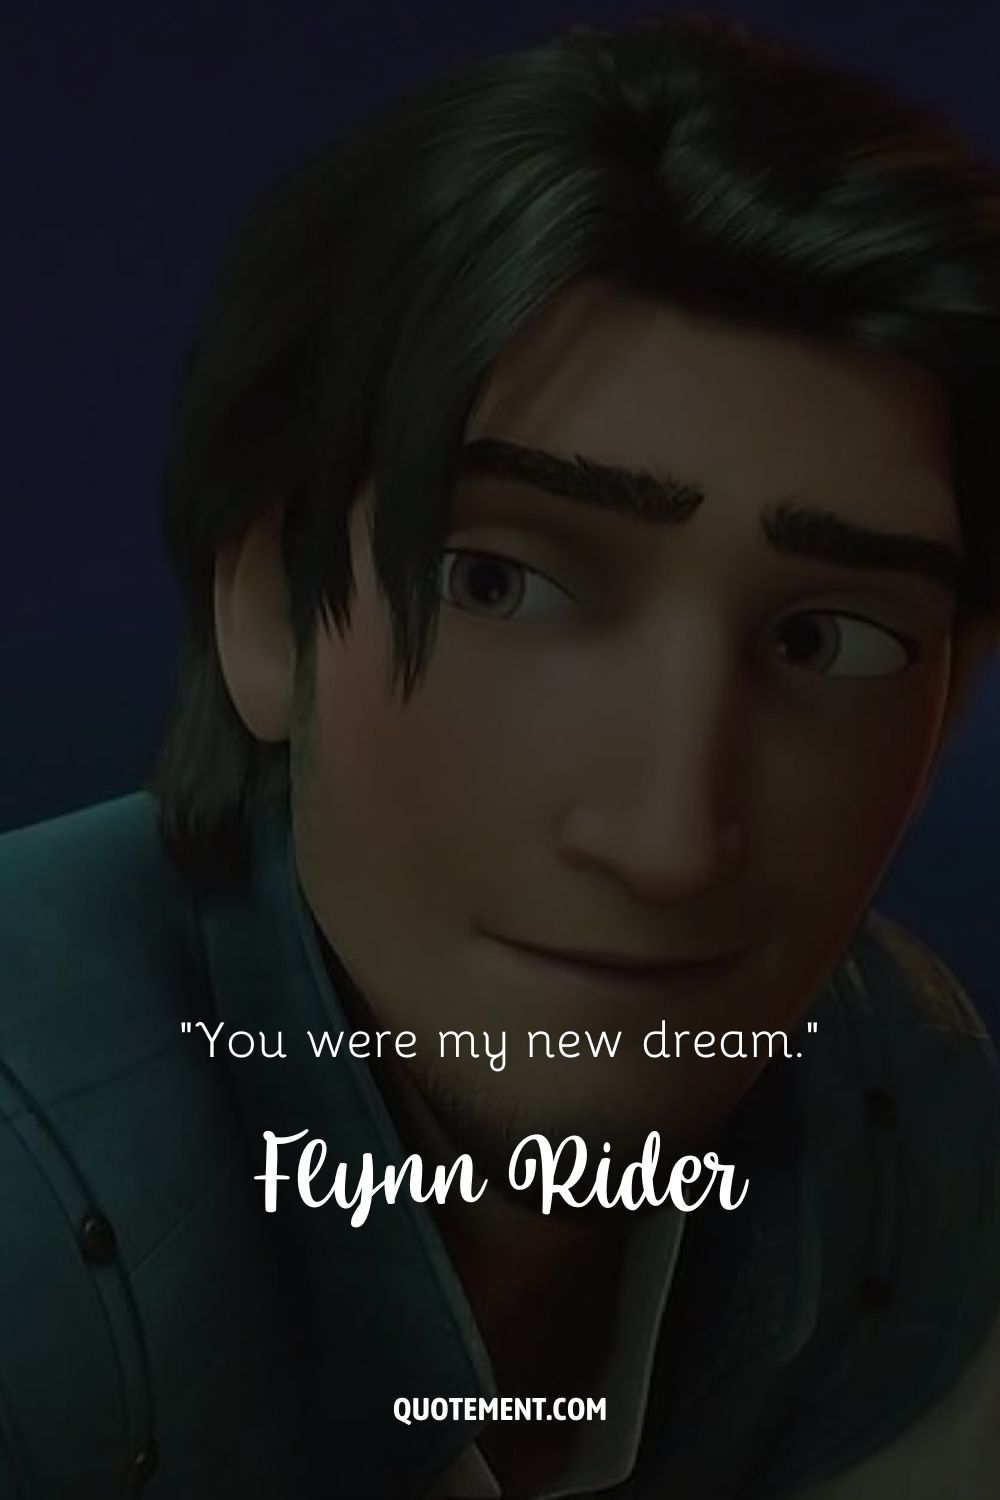 imagen de un personaje masculino de dibujos animados que representa a flynn rider smolder quote